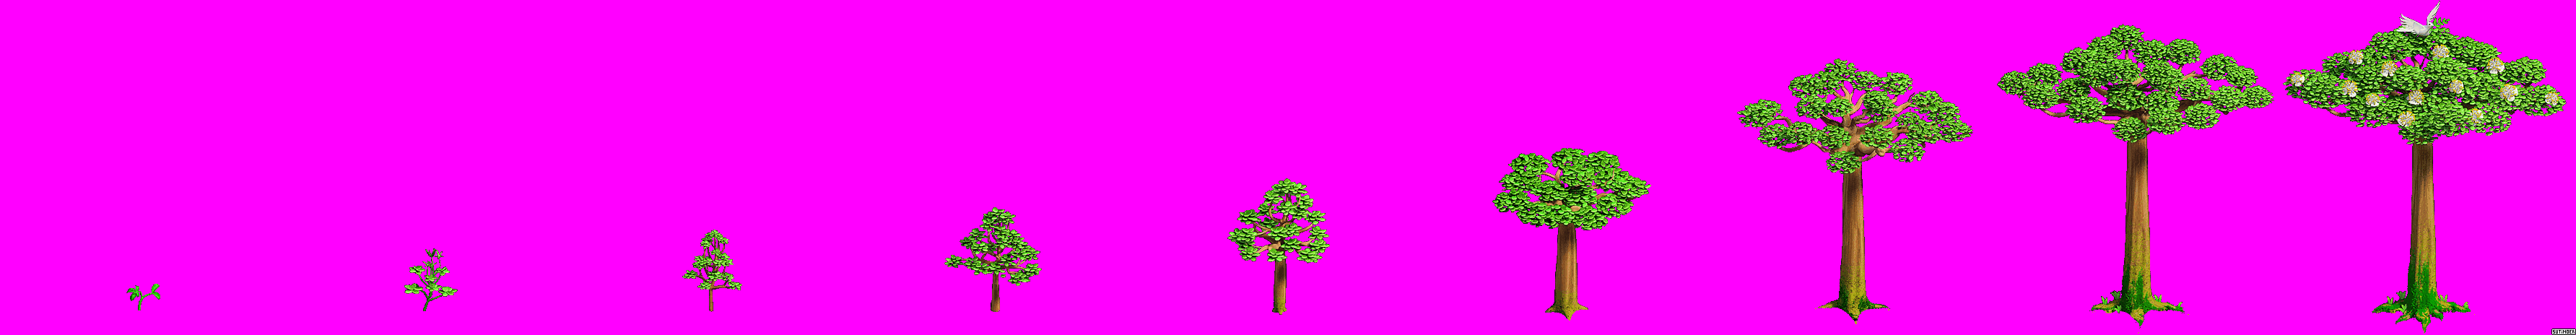 Zombie Island - Gigant Tree